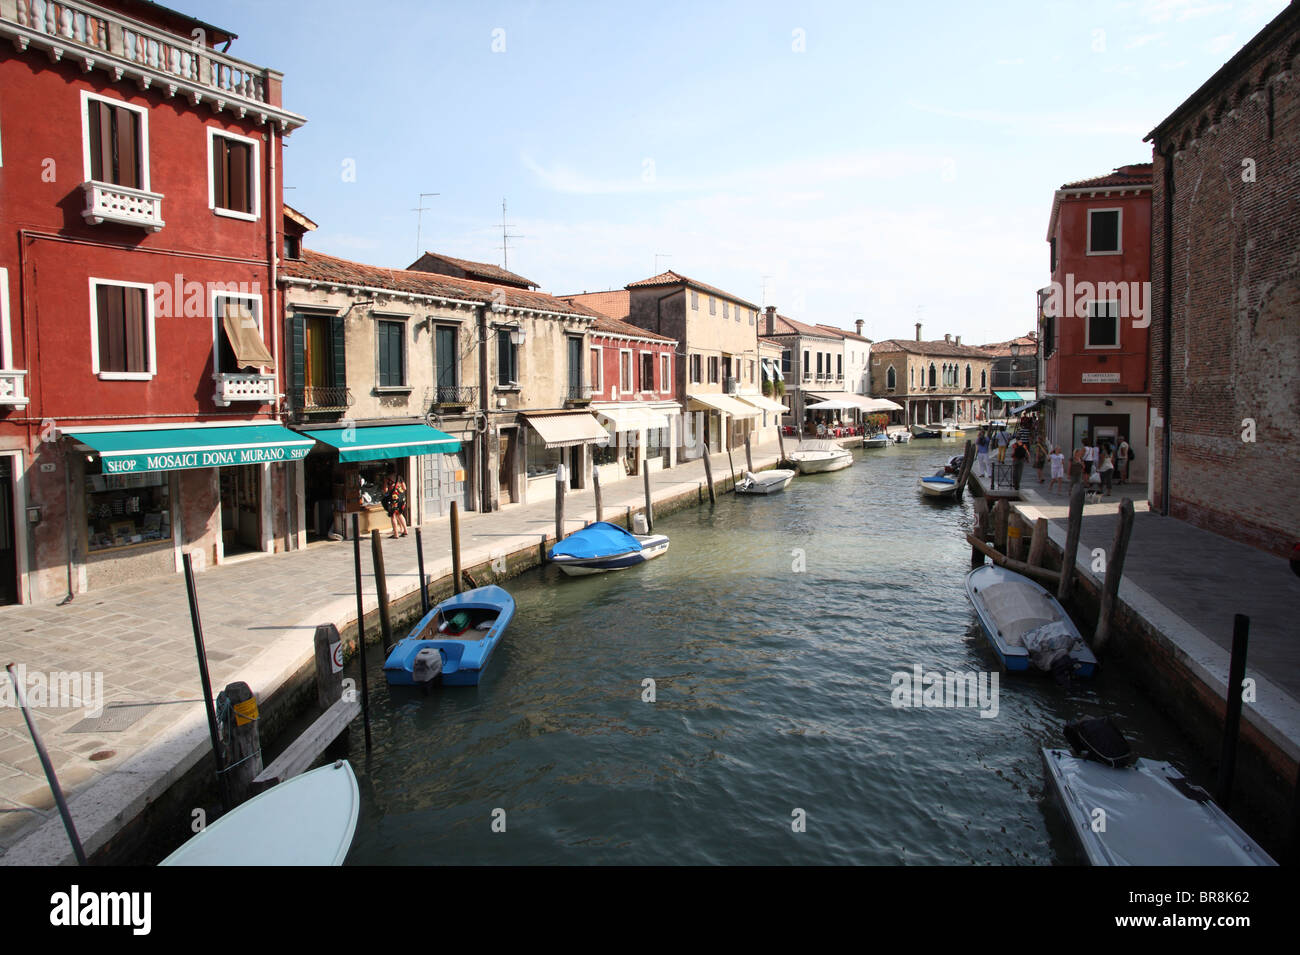 Canal dans l'île de Murano, Murano, Venise, Italie Banque D'Images